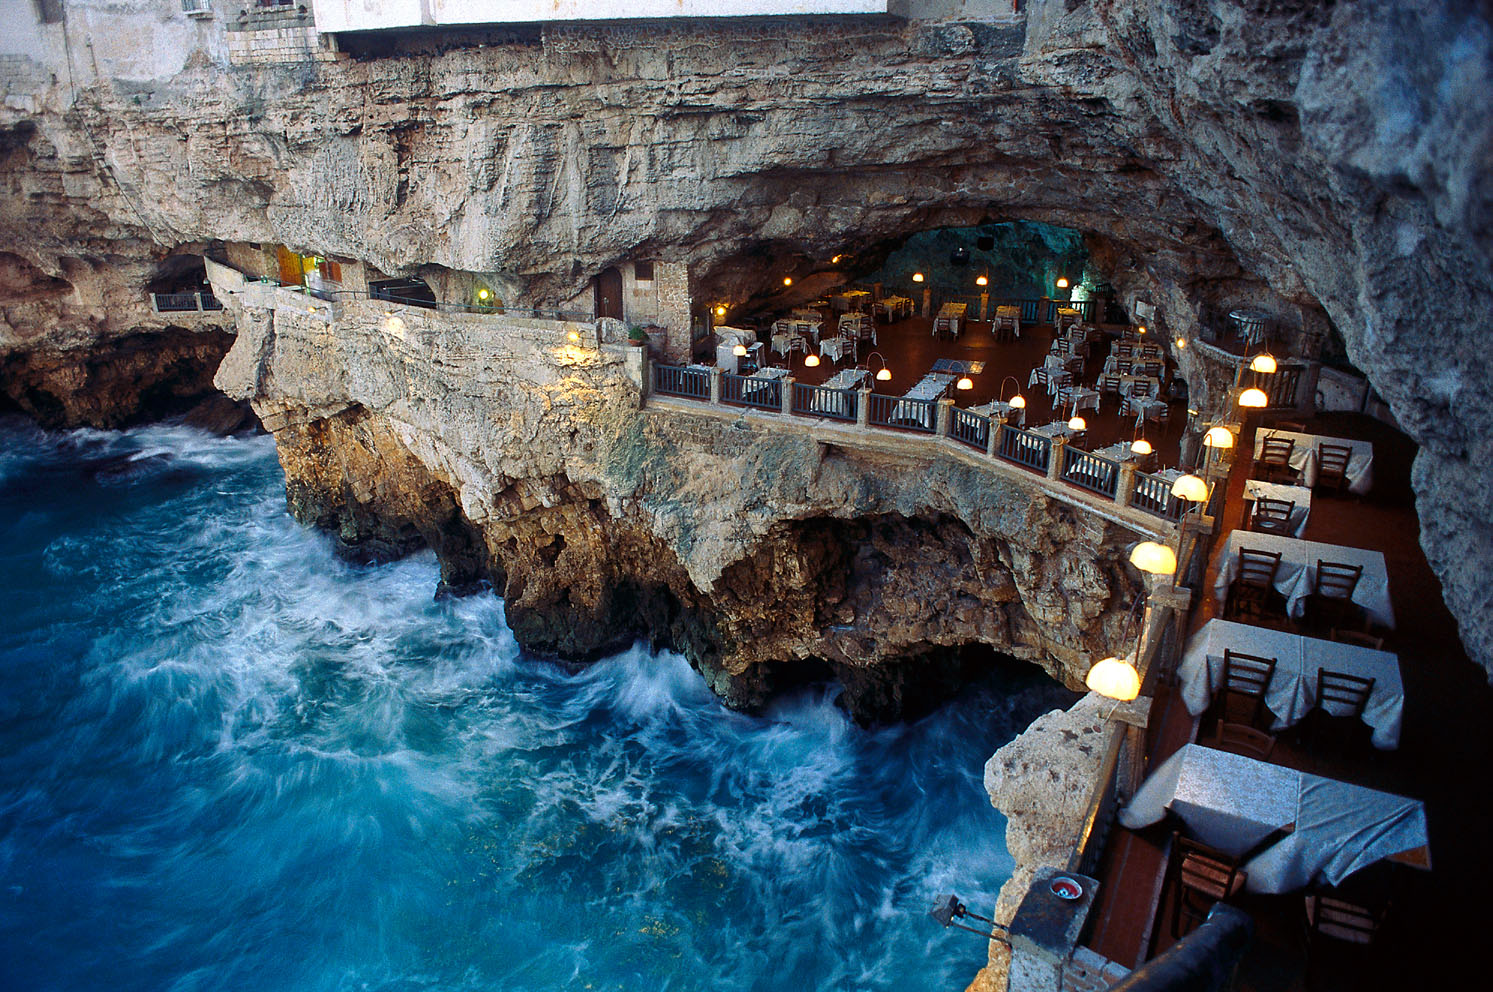 Grotta Palazzese Restaurant, Polignano a Mare, Puglia, Italy